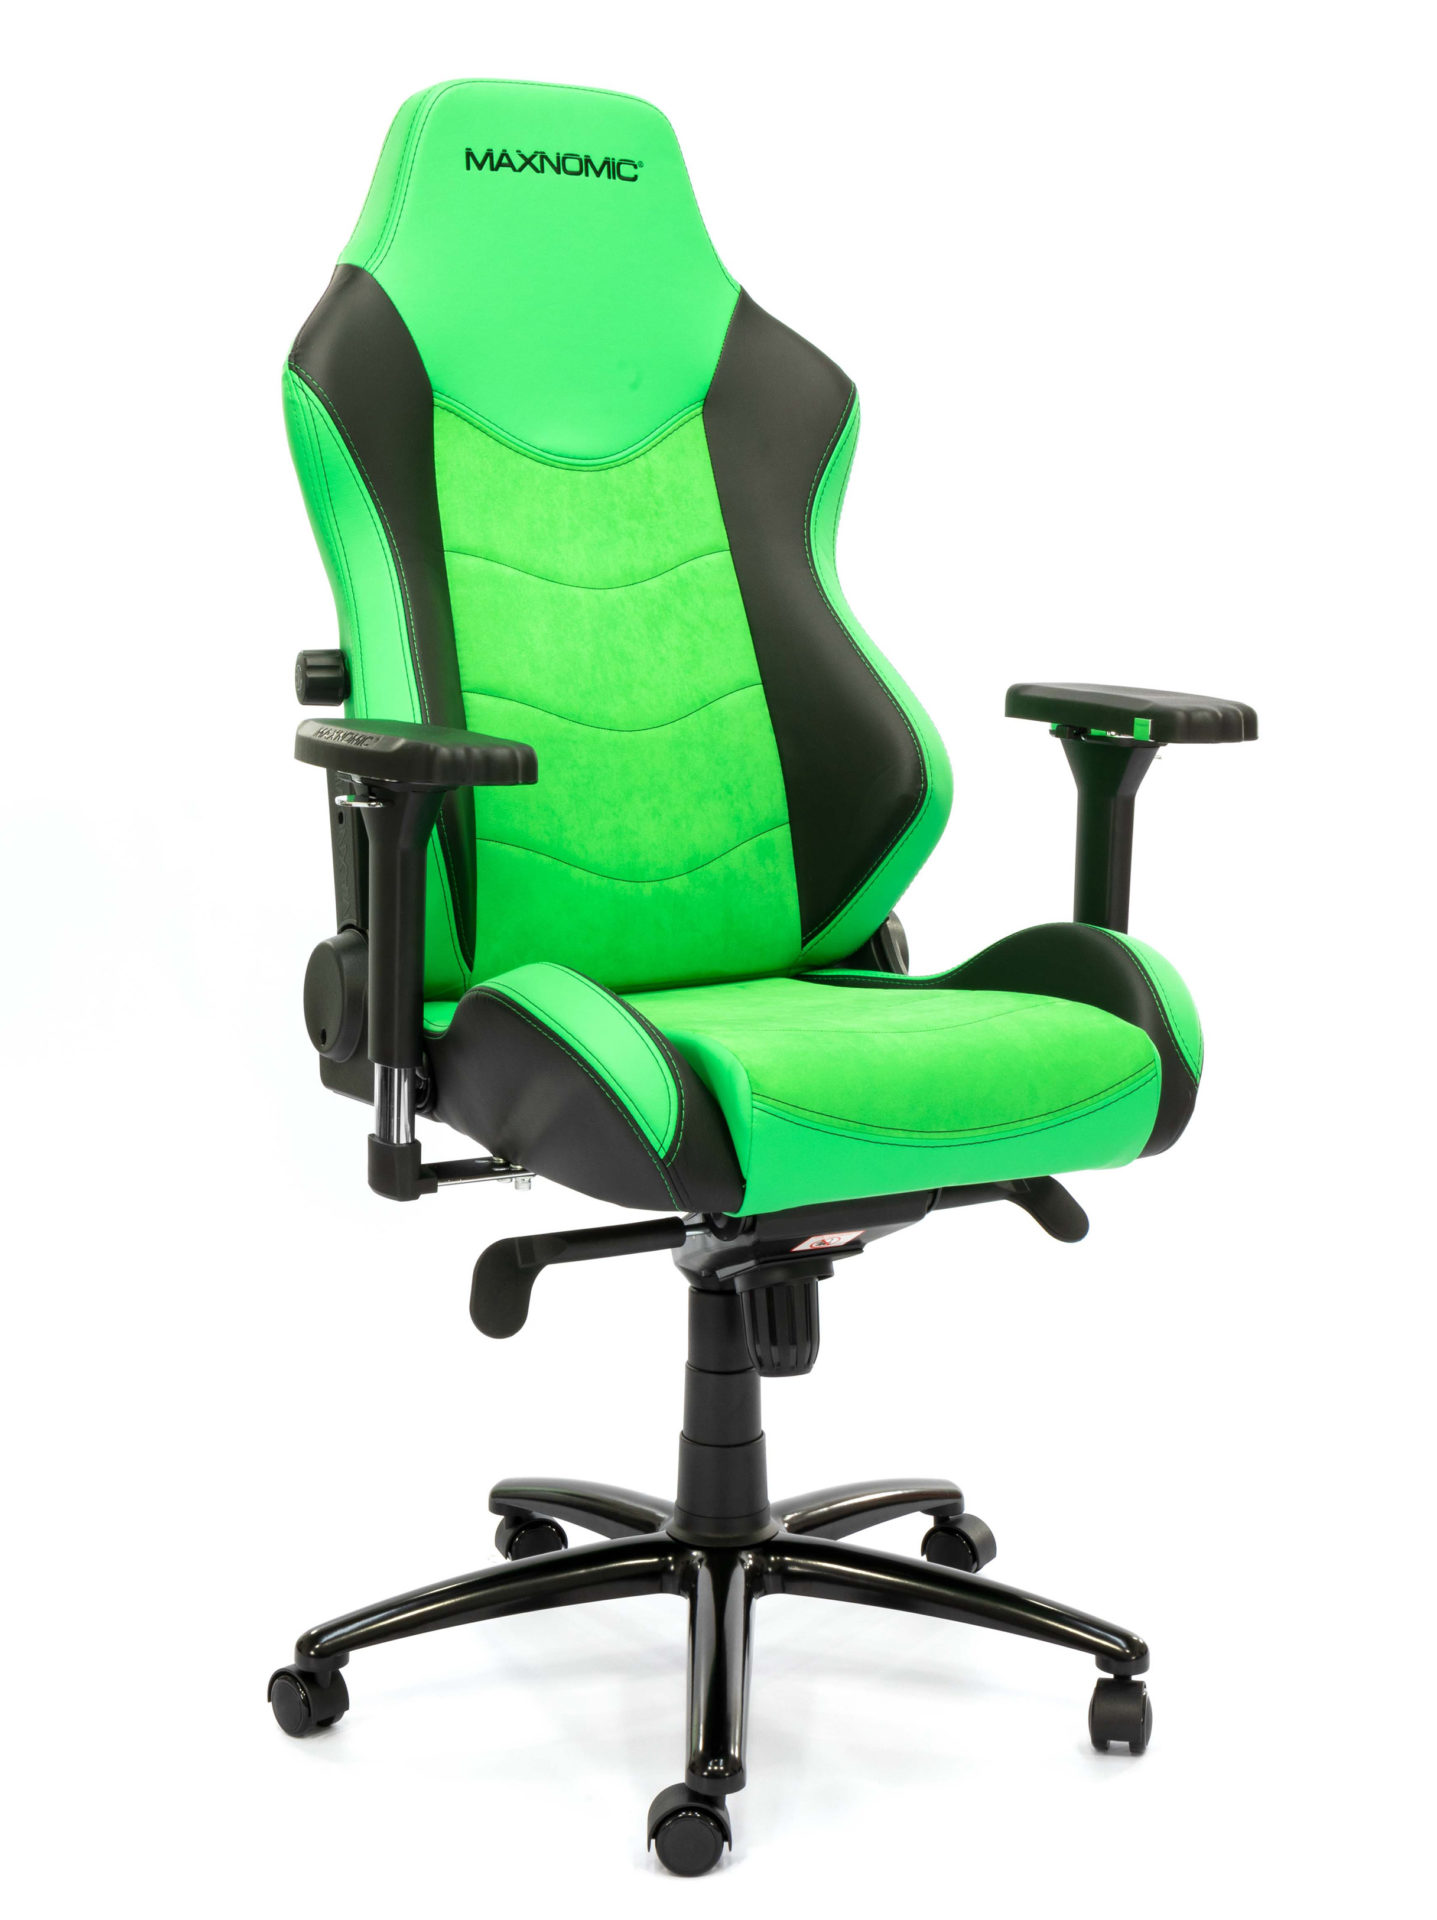 Bürostuhl Modell: Dominator Executive Edition Grün von Maxnomic® - Grüner Bürostuhl mit Mikrofaser- und Kunstlederbezug und integrierter Lordosenstütze.